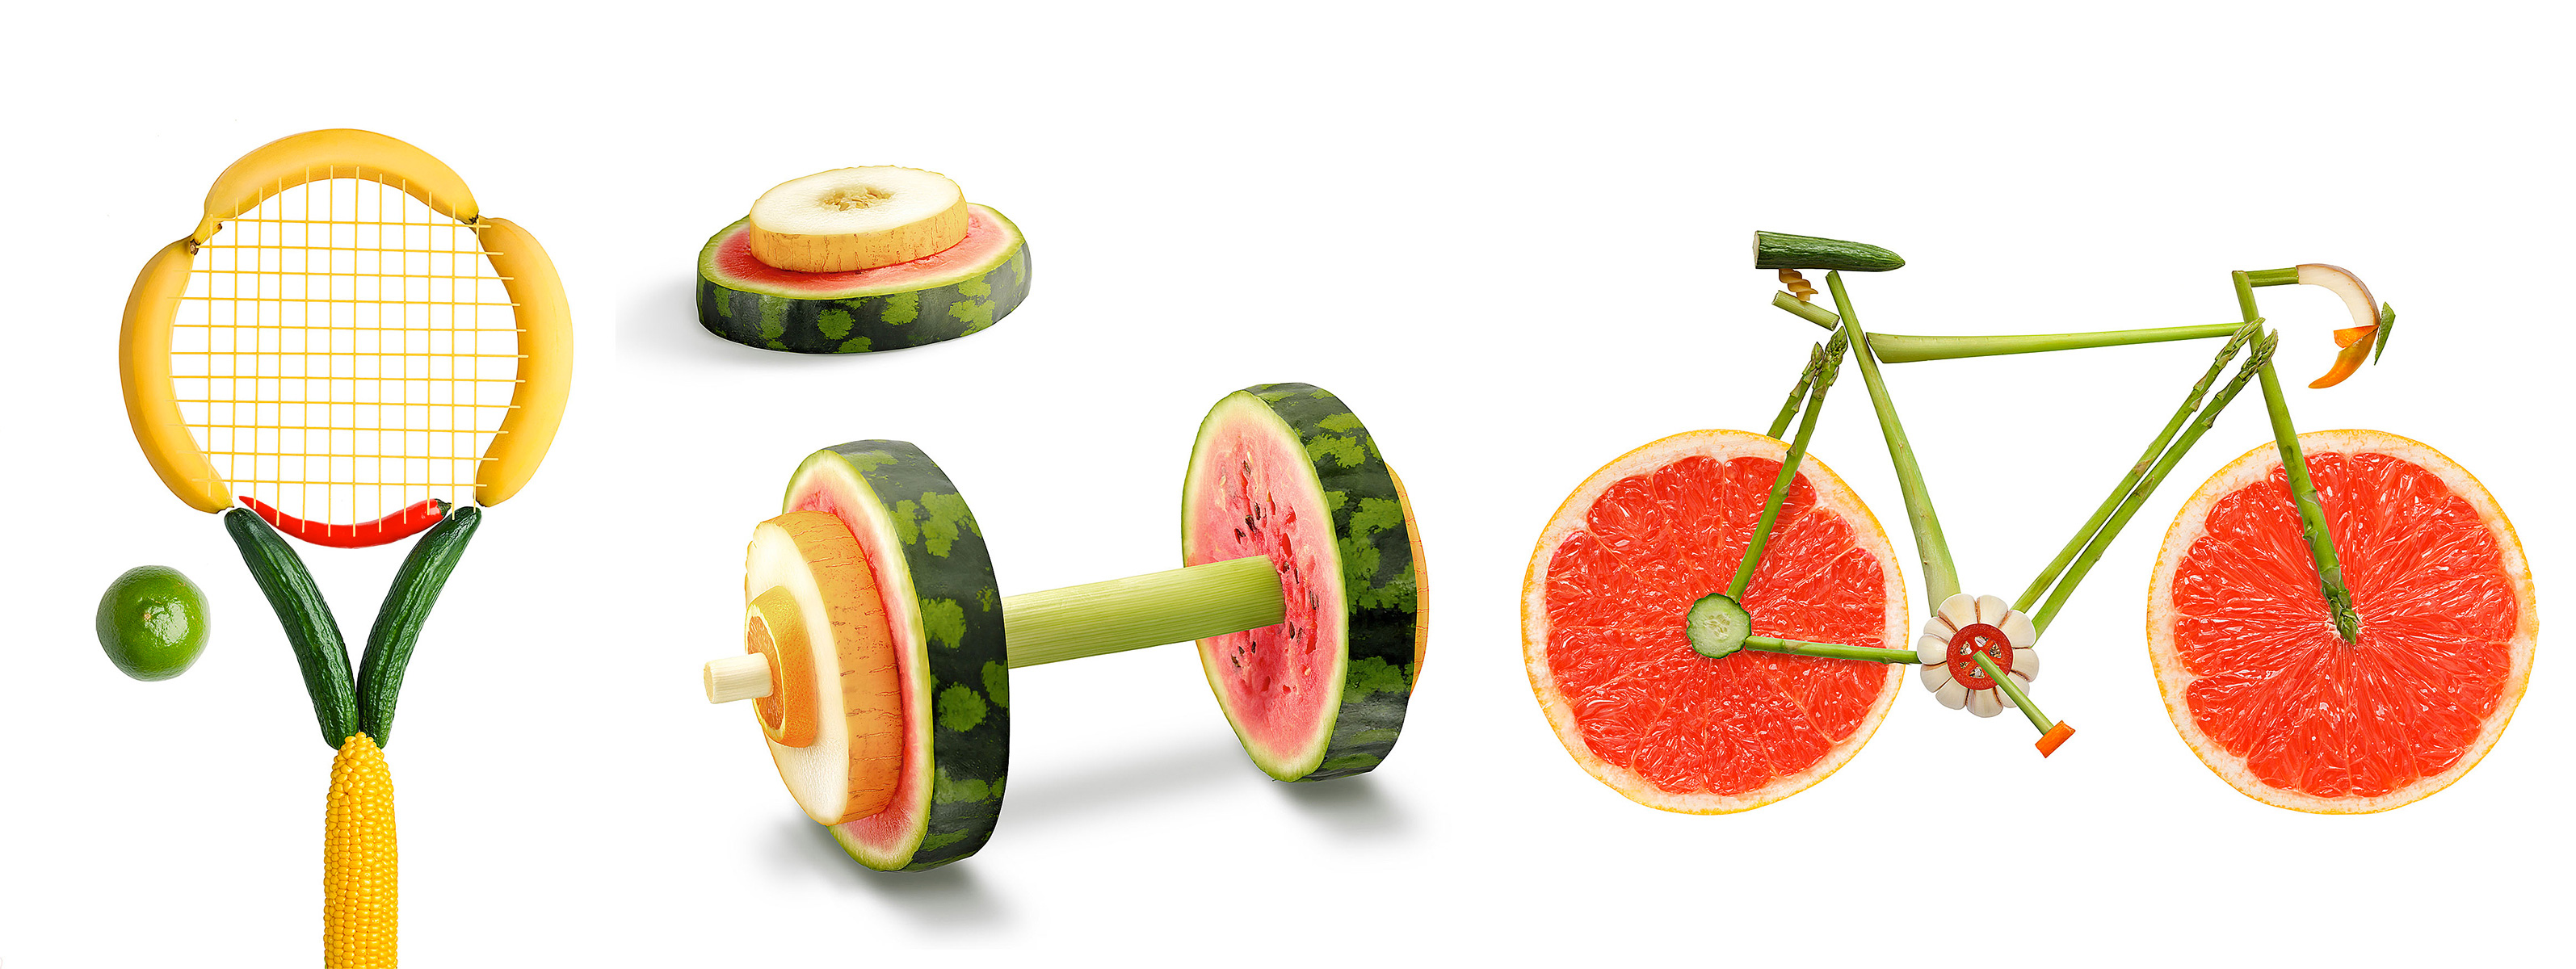 oggetti sportivi ricreati con frutta e verdura